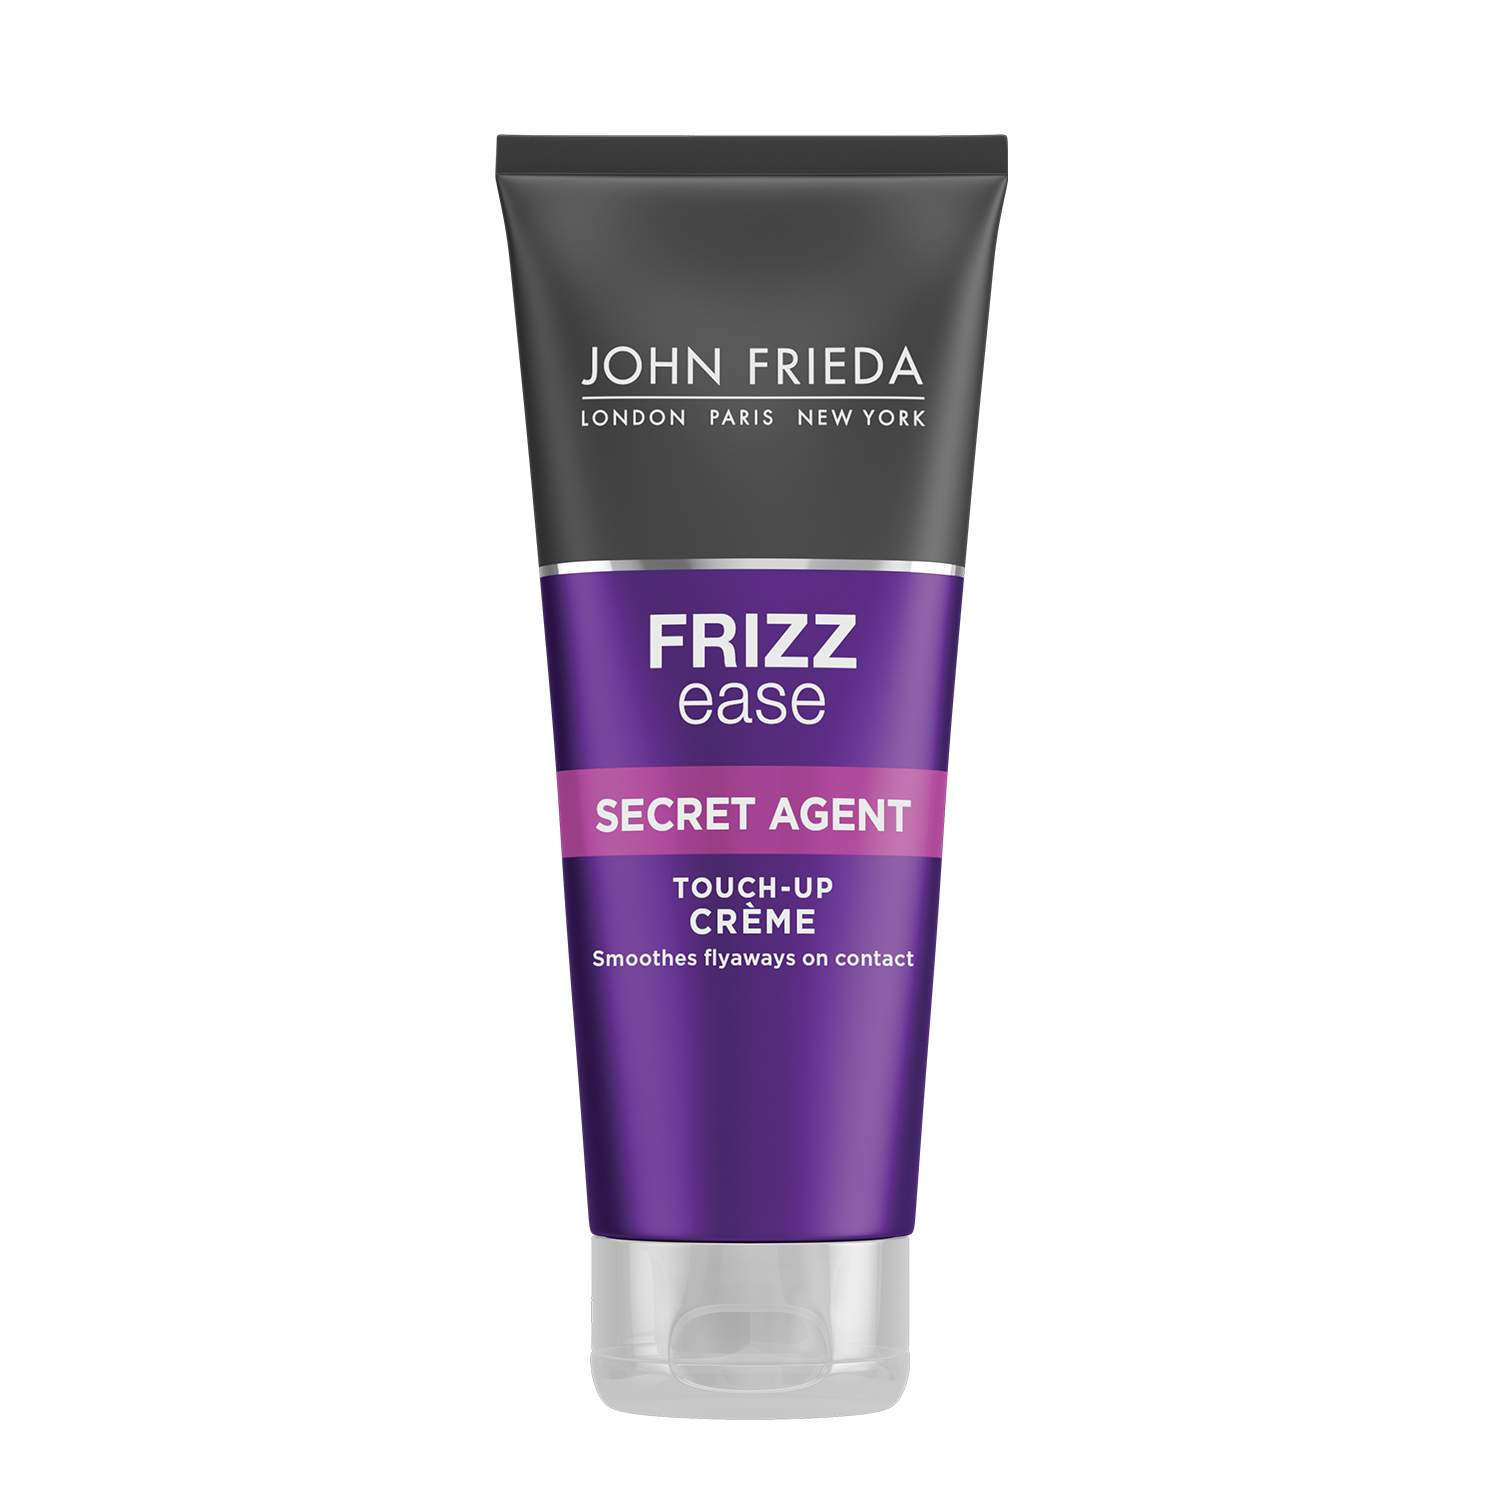 John Frieda Frizz Ease Secret Agent Touch-Up Crème John Frieda Frizz Ease Secret Agent Touch-Up Crème 1